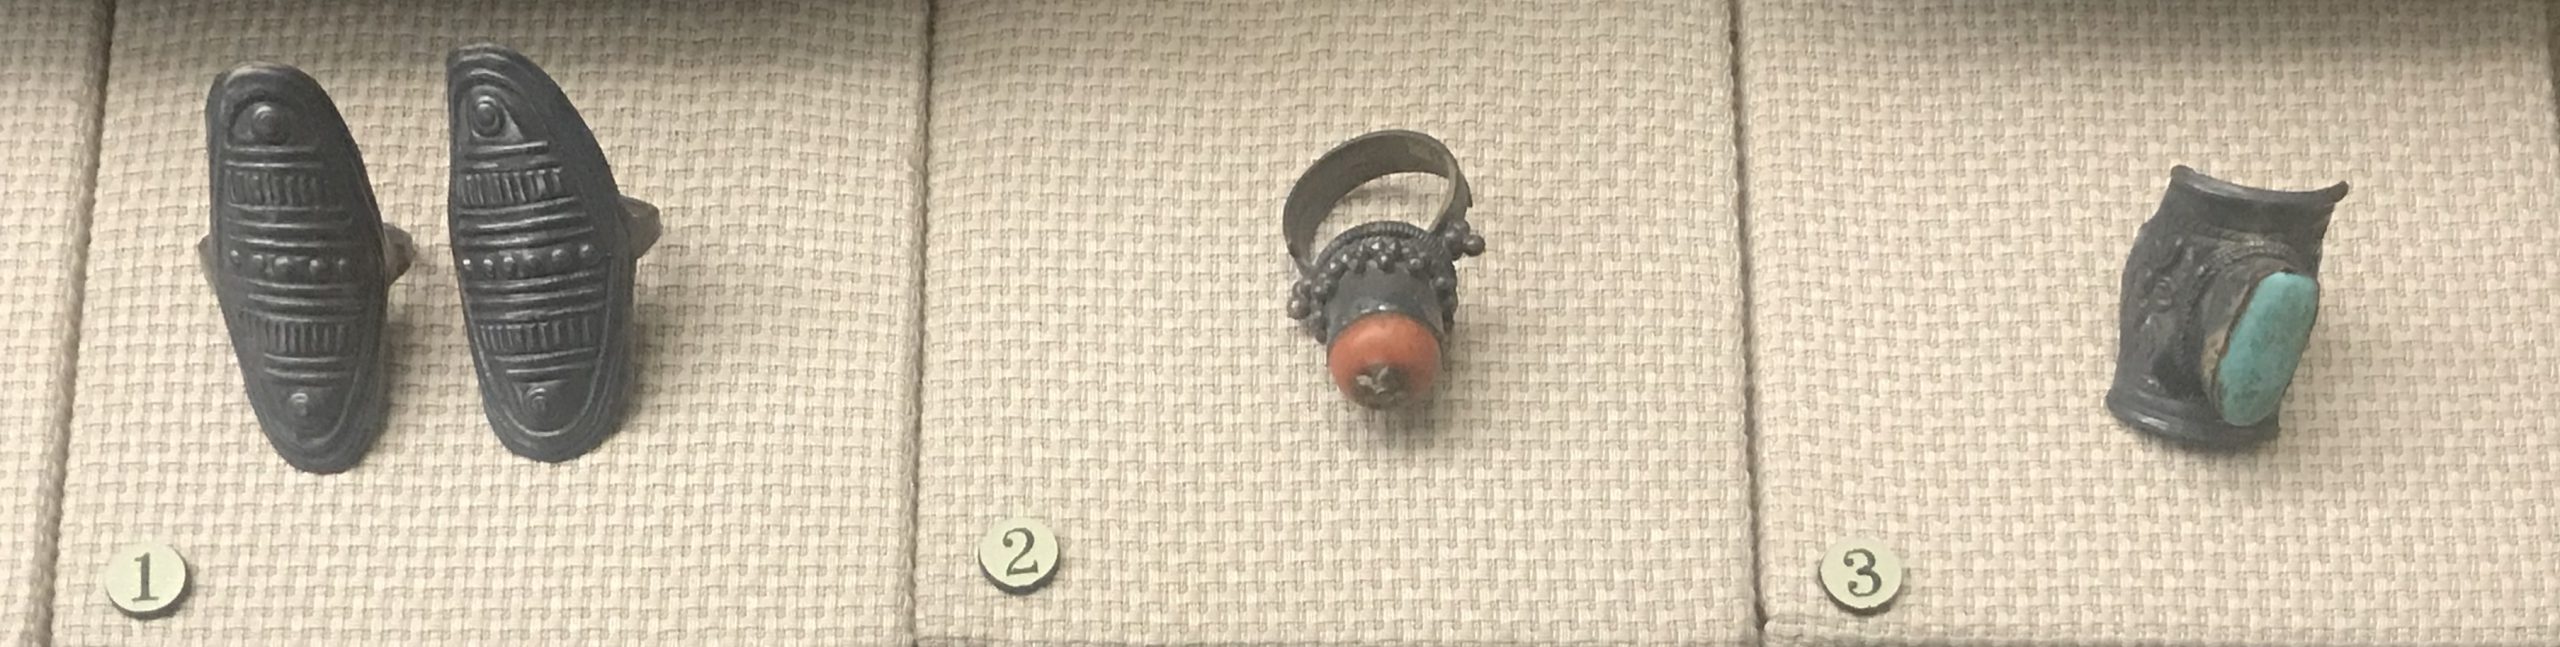 楕円形銀指輪-銀嵌サンゴ指輪-銀嵌ターコイズ指輪-彜族アクセサリー-四川民族文物館-四川博物館-成都